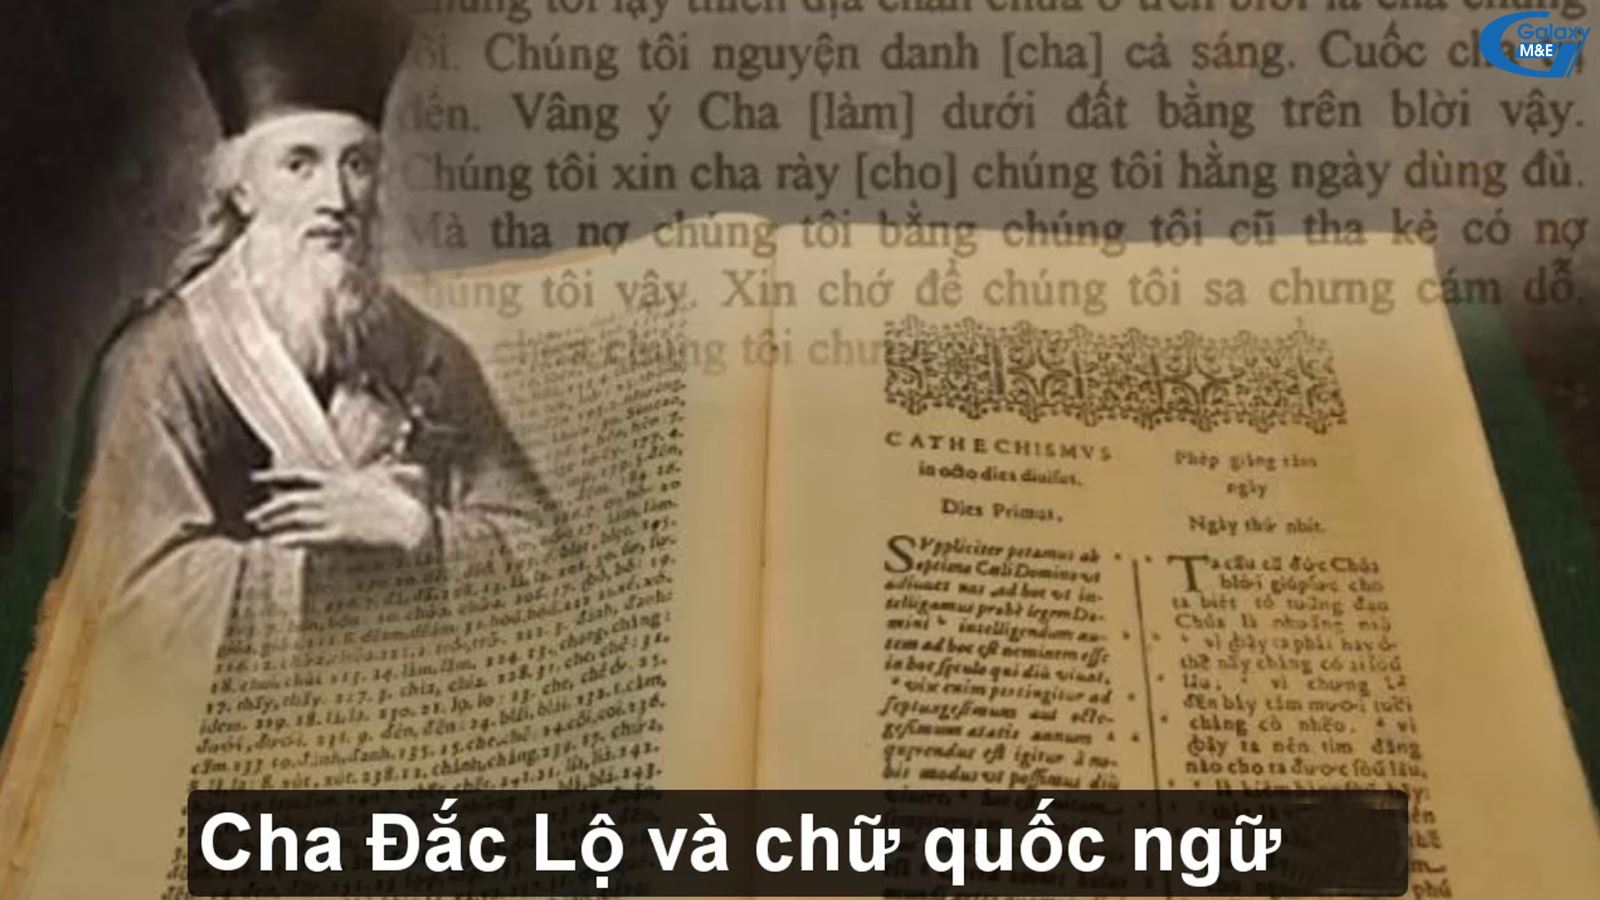 Cha Đắc Lộ - tên phiên âm của Linh mục Alexandre de Rhodes. Ông cùng với 4 linh mục dòng Tên và một tín hữu Nhật Bản cập bến Hội An TK16 để đem Công giáo đến với Việt Nam. Cha Đắc Lộ cũng chính là người dày công nghiên cứu chữ Khoa đẩu (Hỏa tự) để tạo ra chữ quốc ngữ ngày nay.